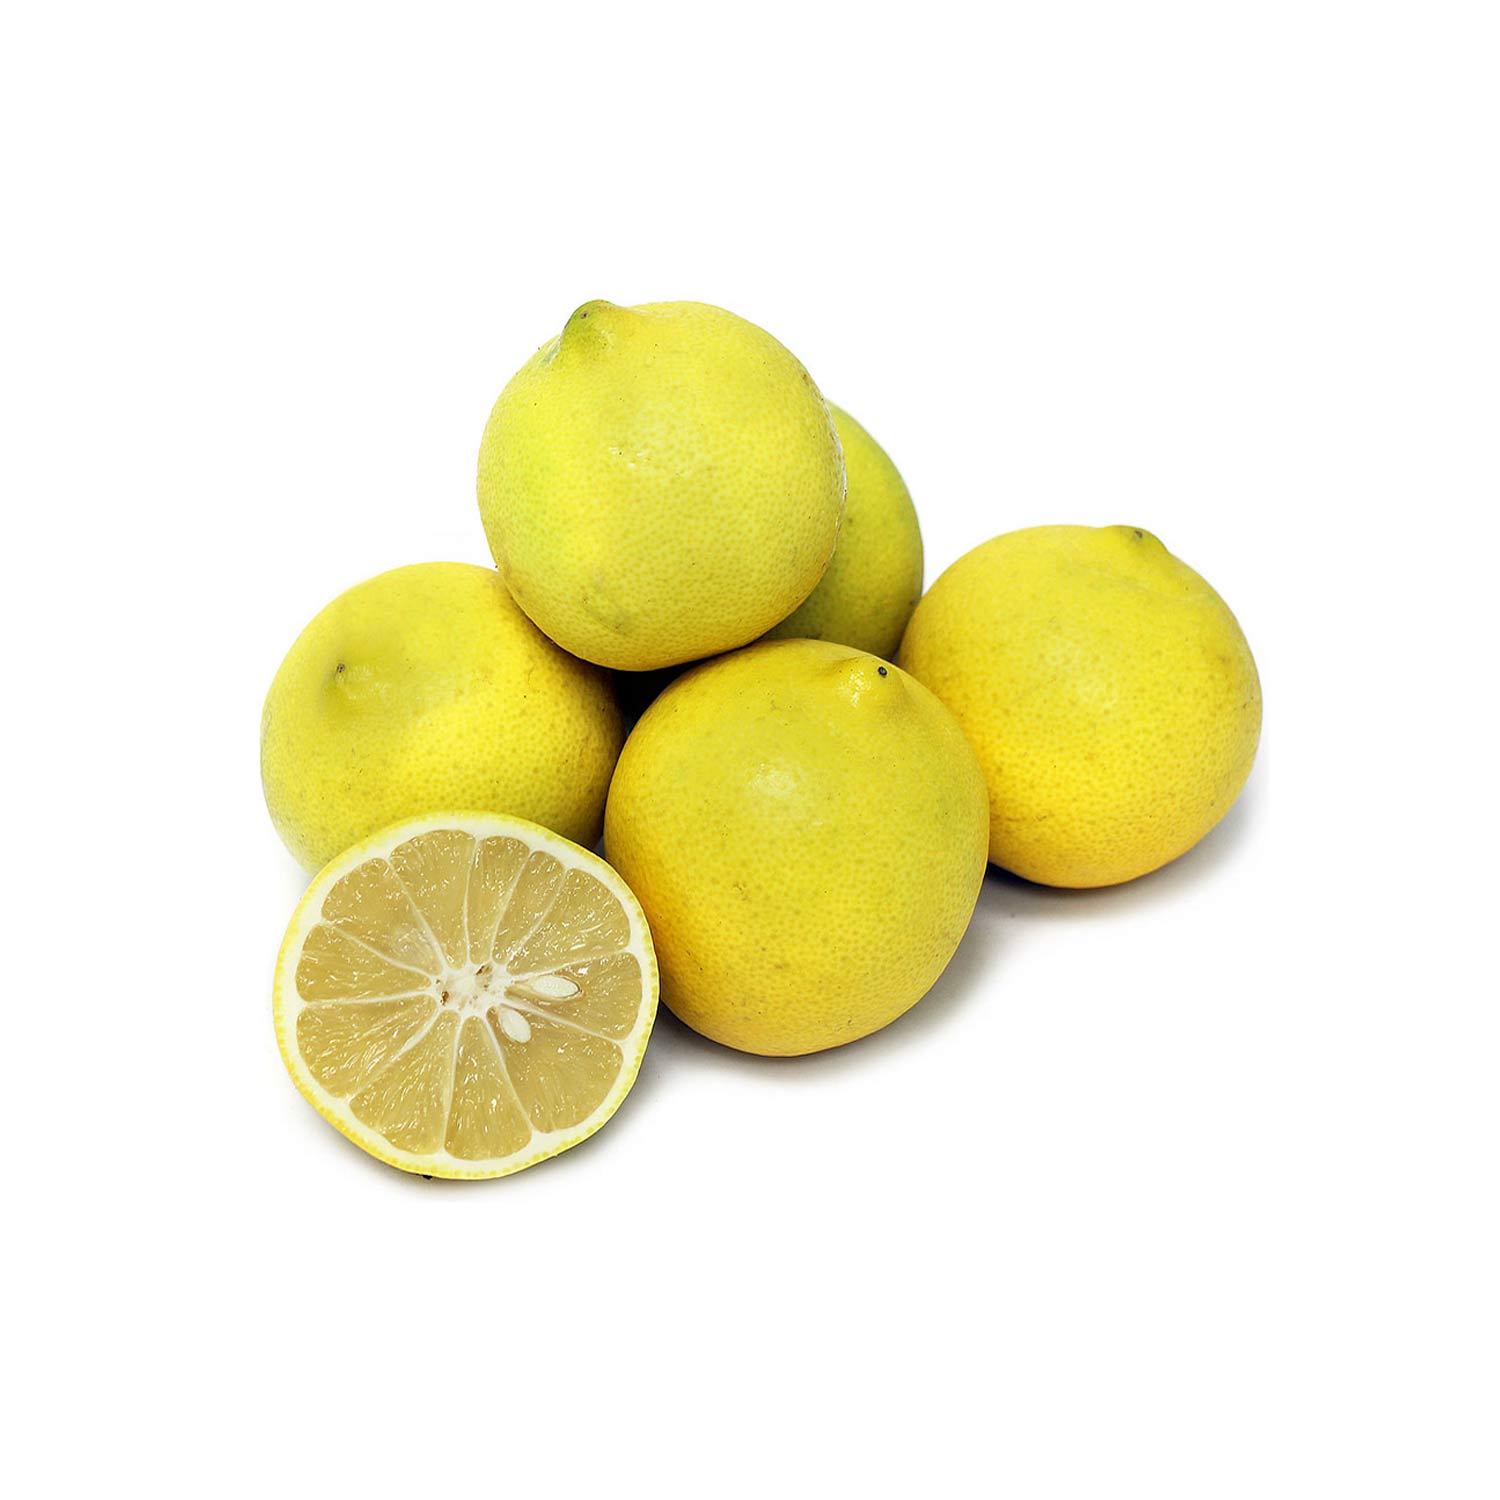 Sweet lemon. Персидский лимон. Лимон иранский сладкий. Черный персидский лимон. Яблоки иранские желтые.